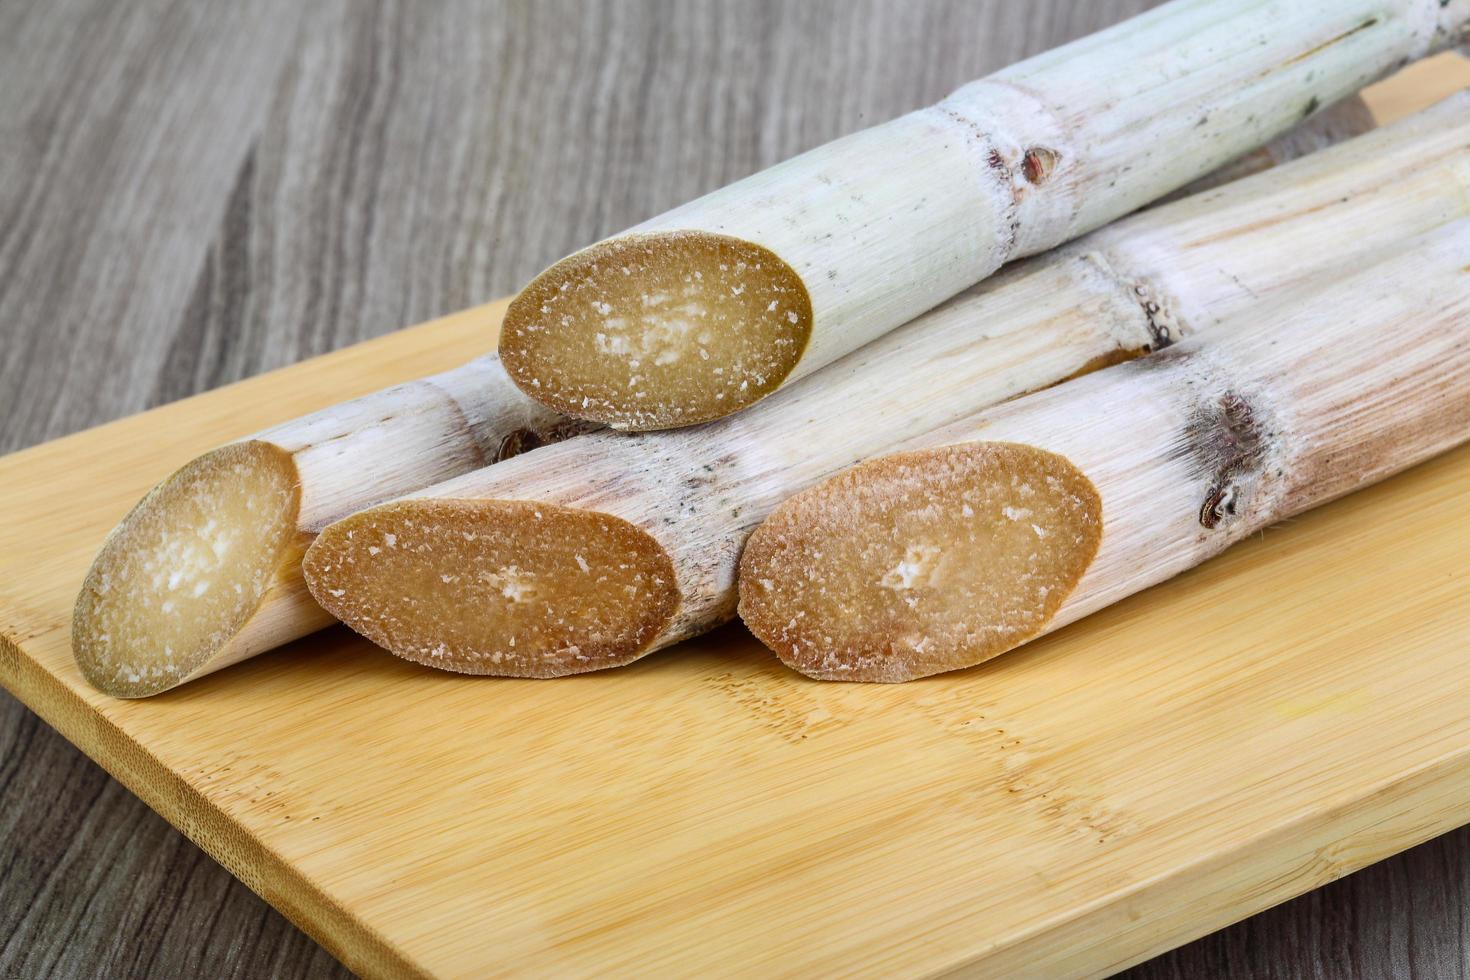 bâtonnets de sucre sur planche de bois et fond en bois photo